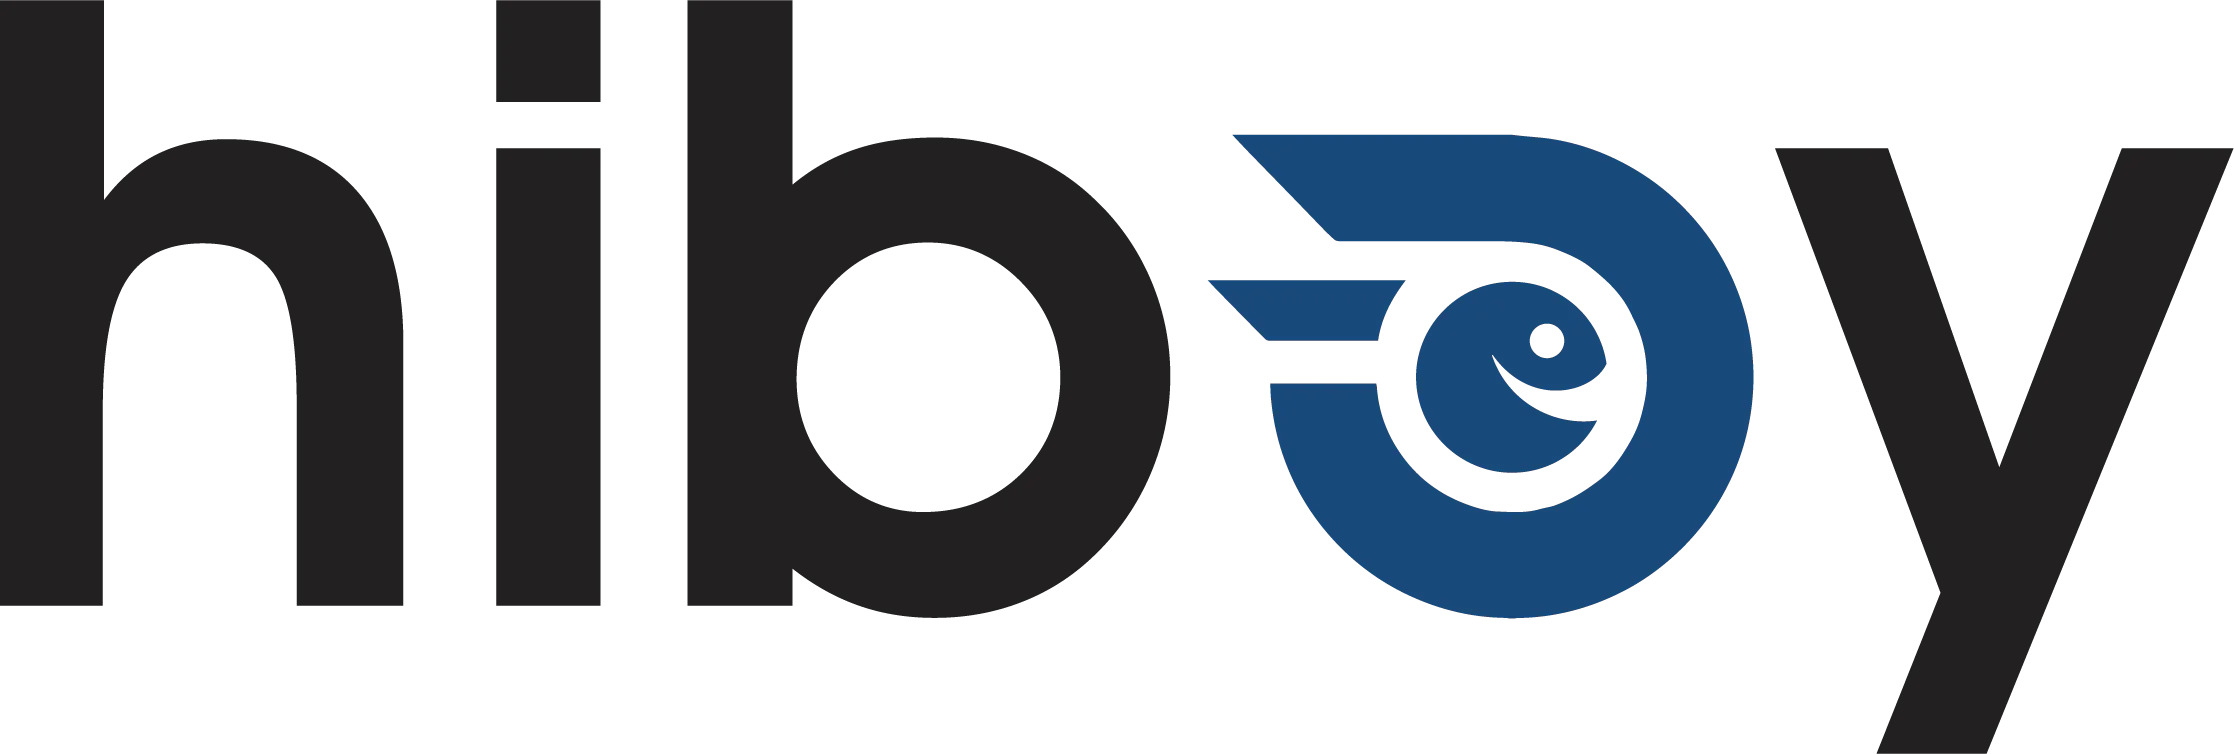 Hiboy logo